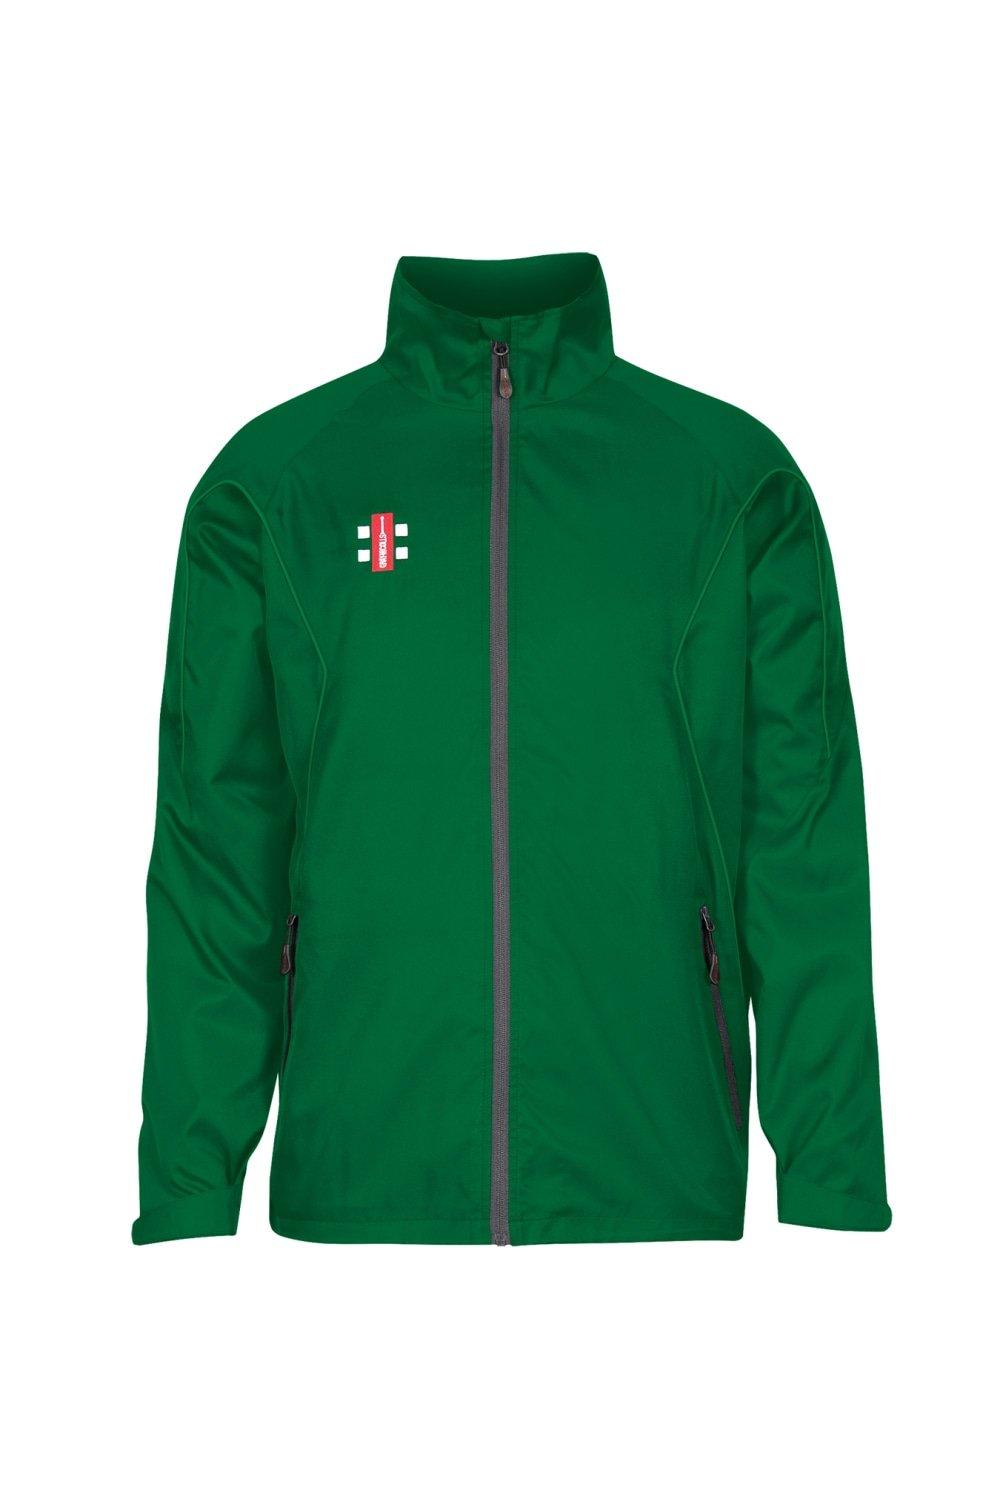 Тренировочная куртка Storm Gray-Nicolls, зеленый топ promod с принтом 42 44 размер